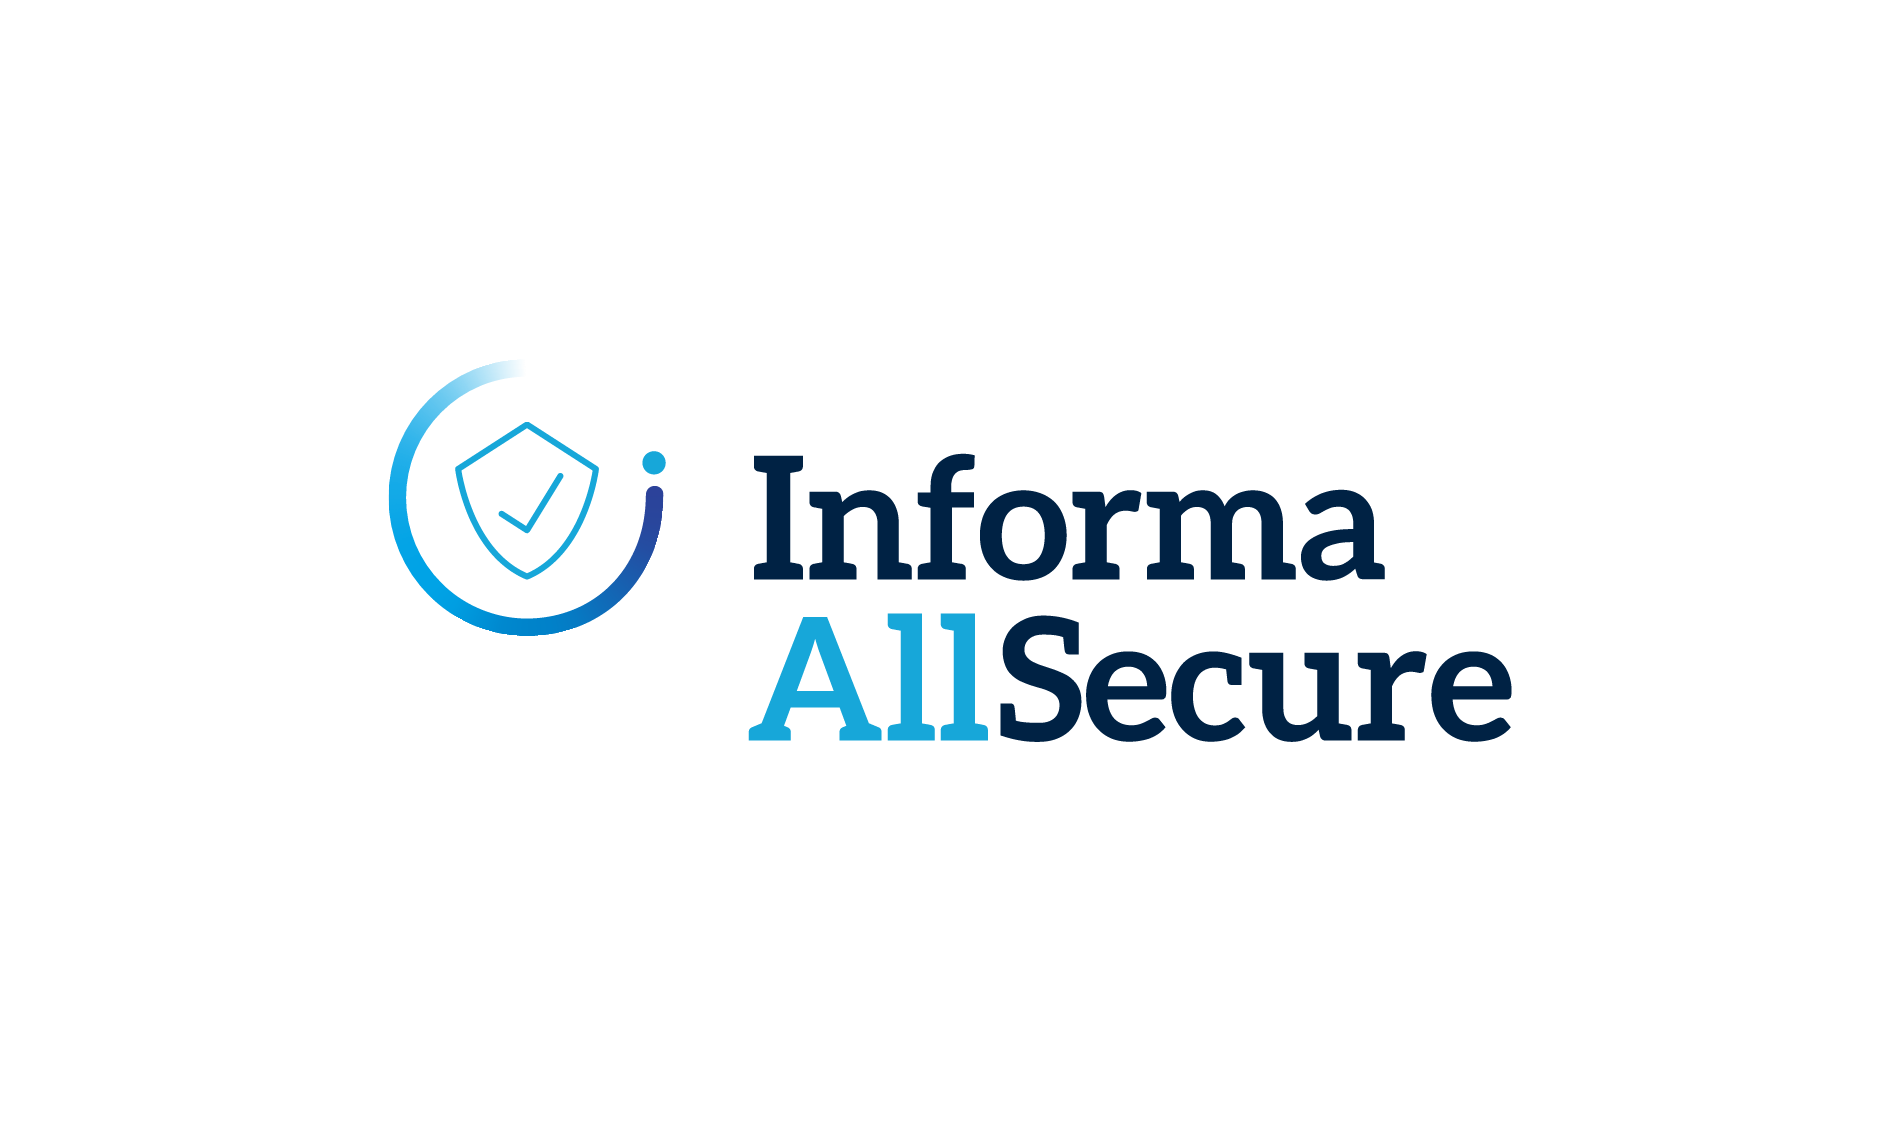 Informa AllSecure logo